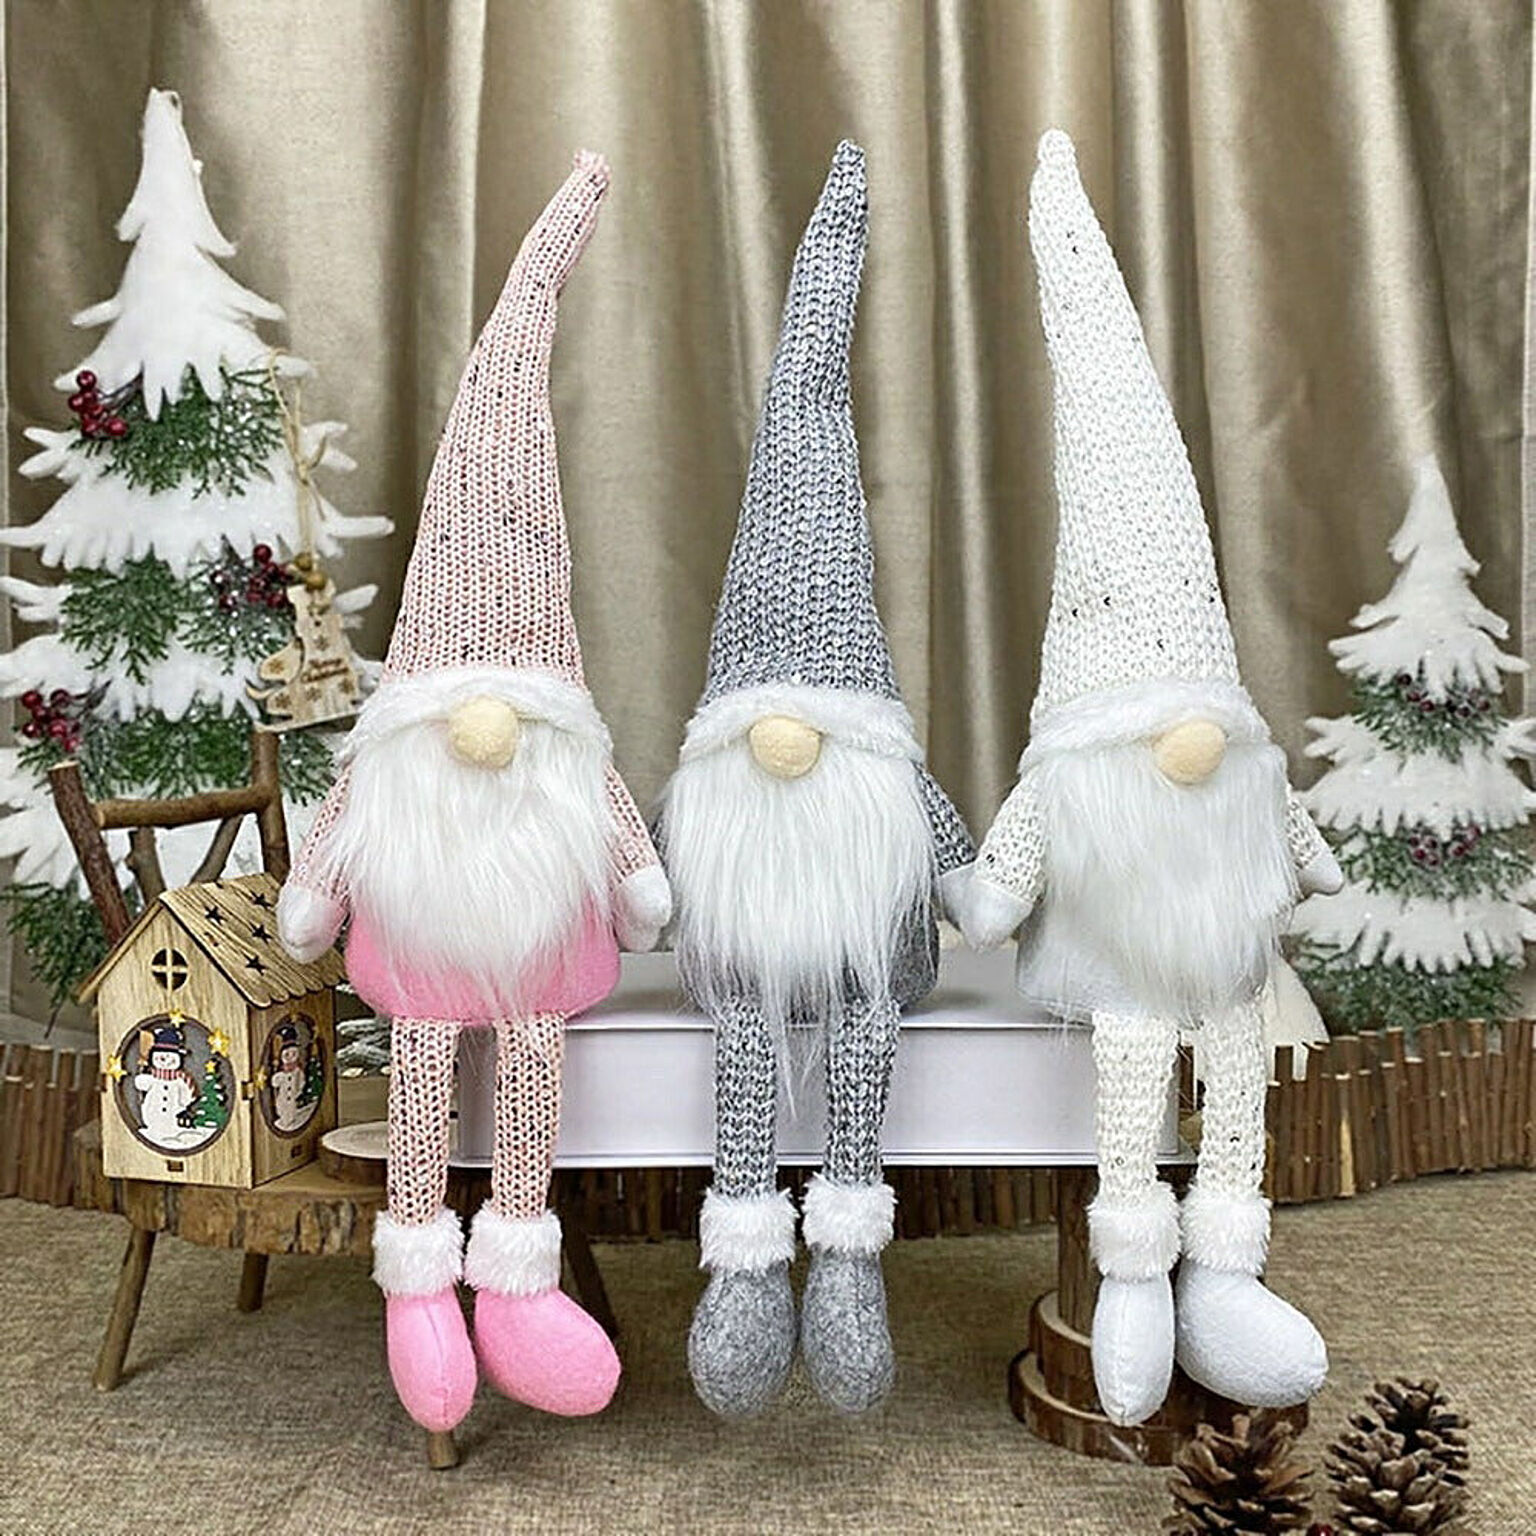 【在庫限り】クリスマス 妖精 人形 サンタさん ピンクorホワイトorグレー ぬいぐるみ オーナメント 置物 デコレーション クリスマスツリーの装飾